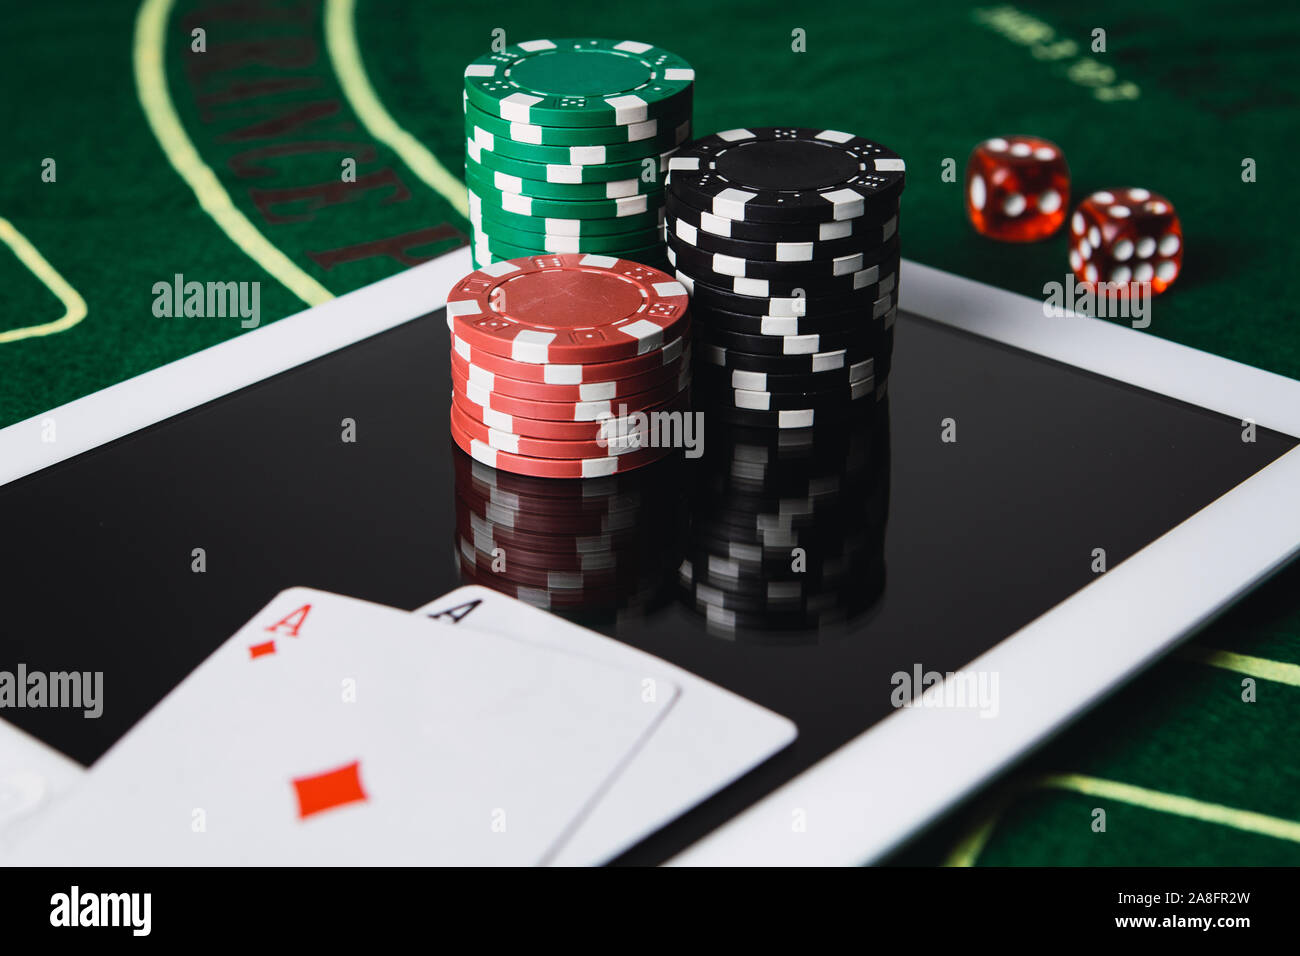 Online poker immagini e fotografie stock ad alta risoluzione - Alamy